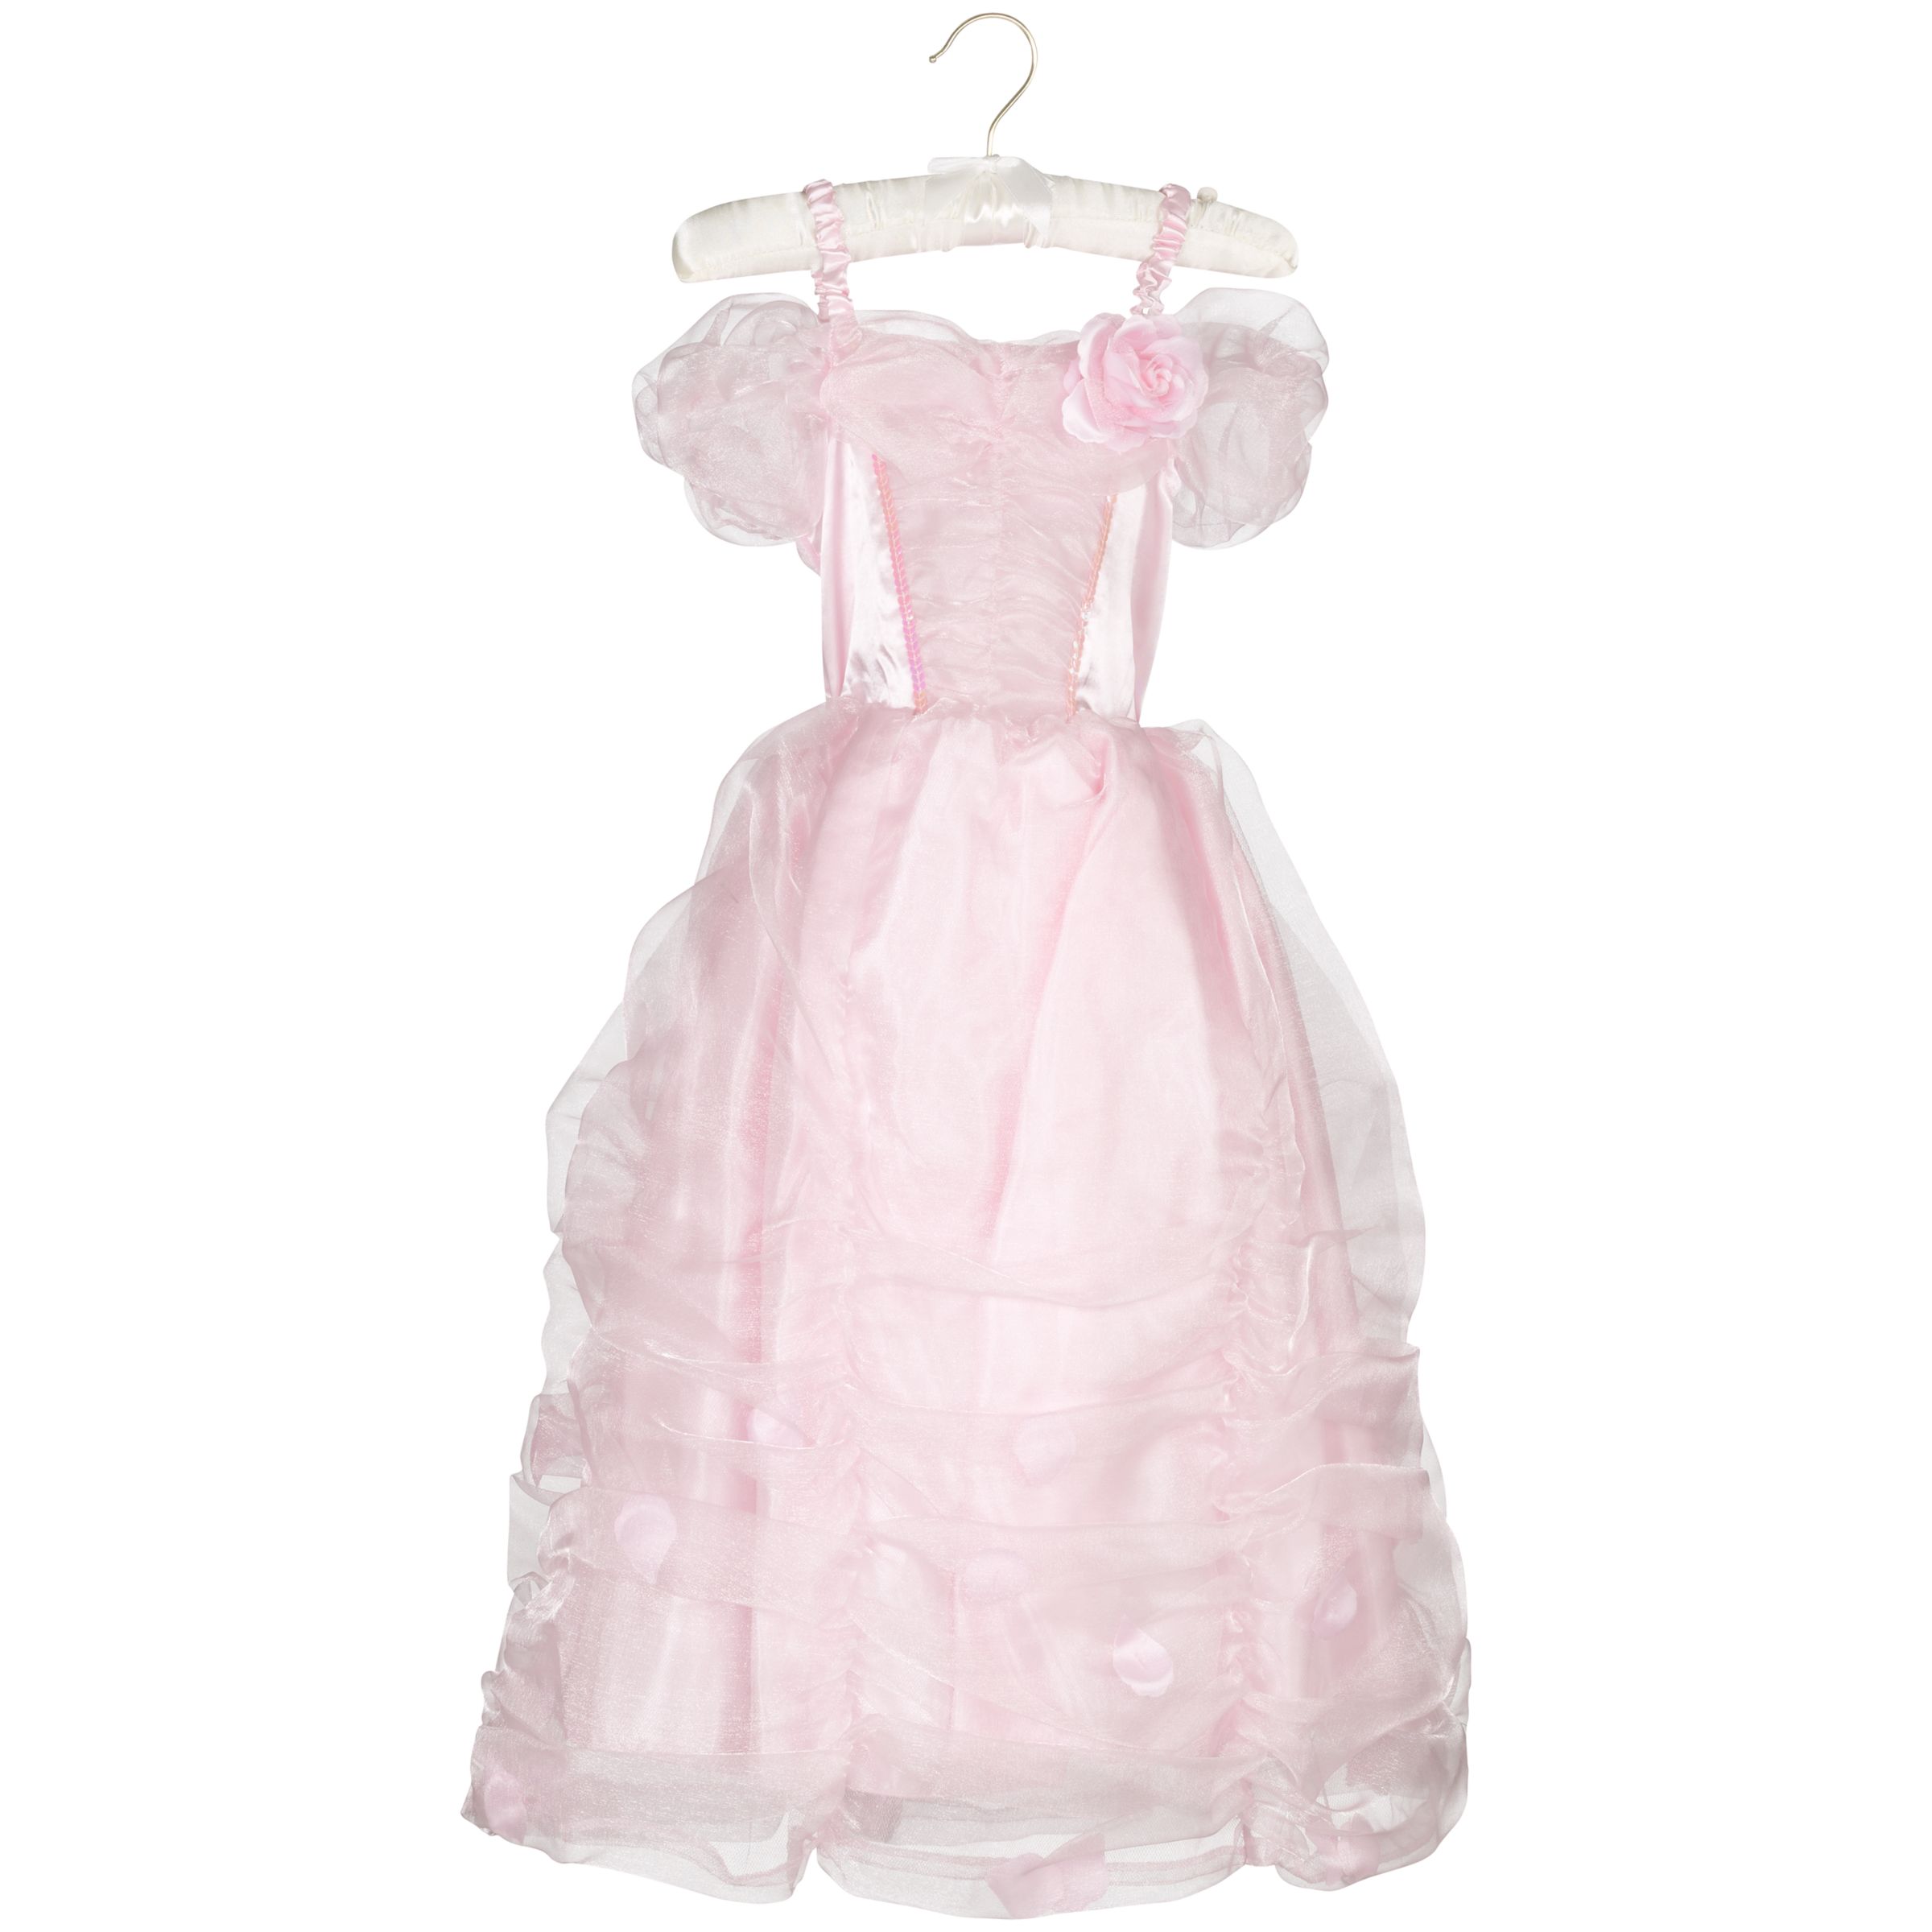 flipkart online shopping gown dresses